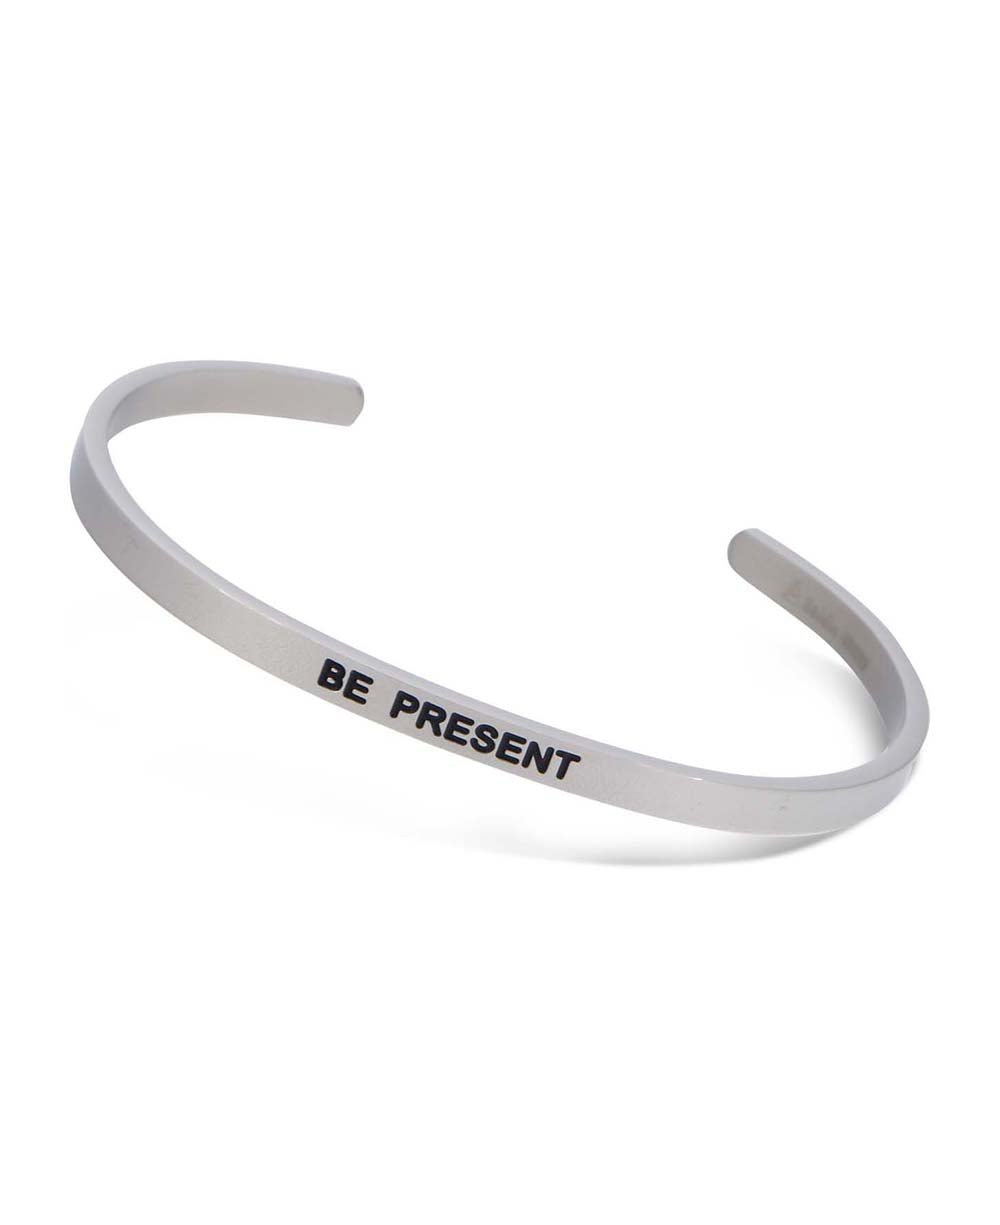 Be Present Engraved Cuff Bracelet - Bracelets